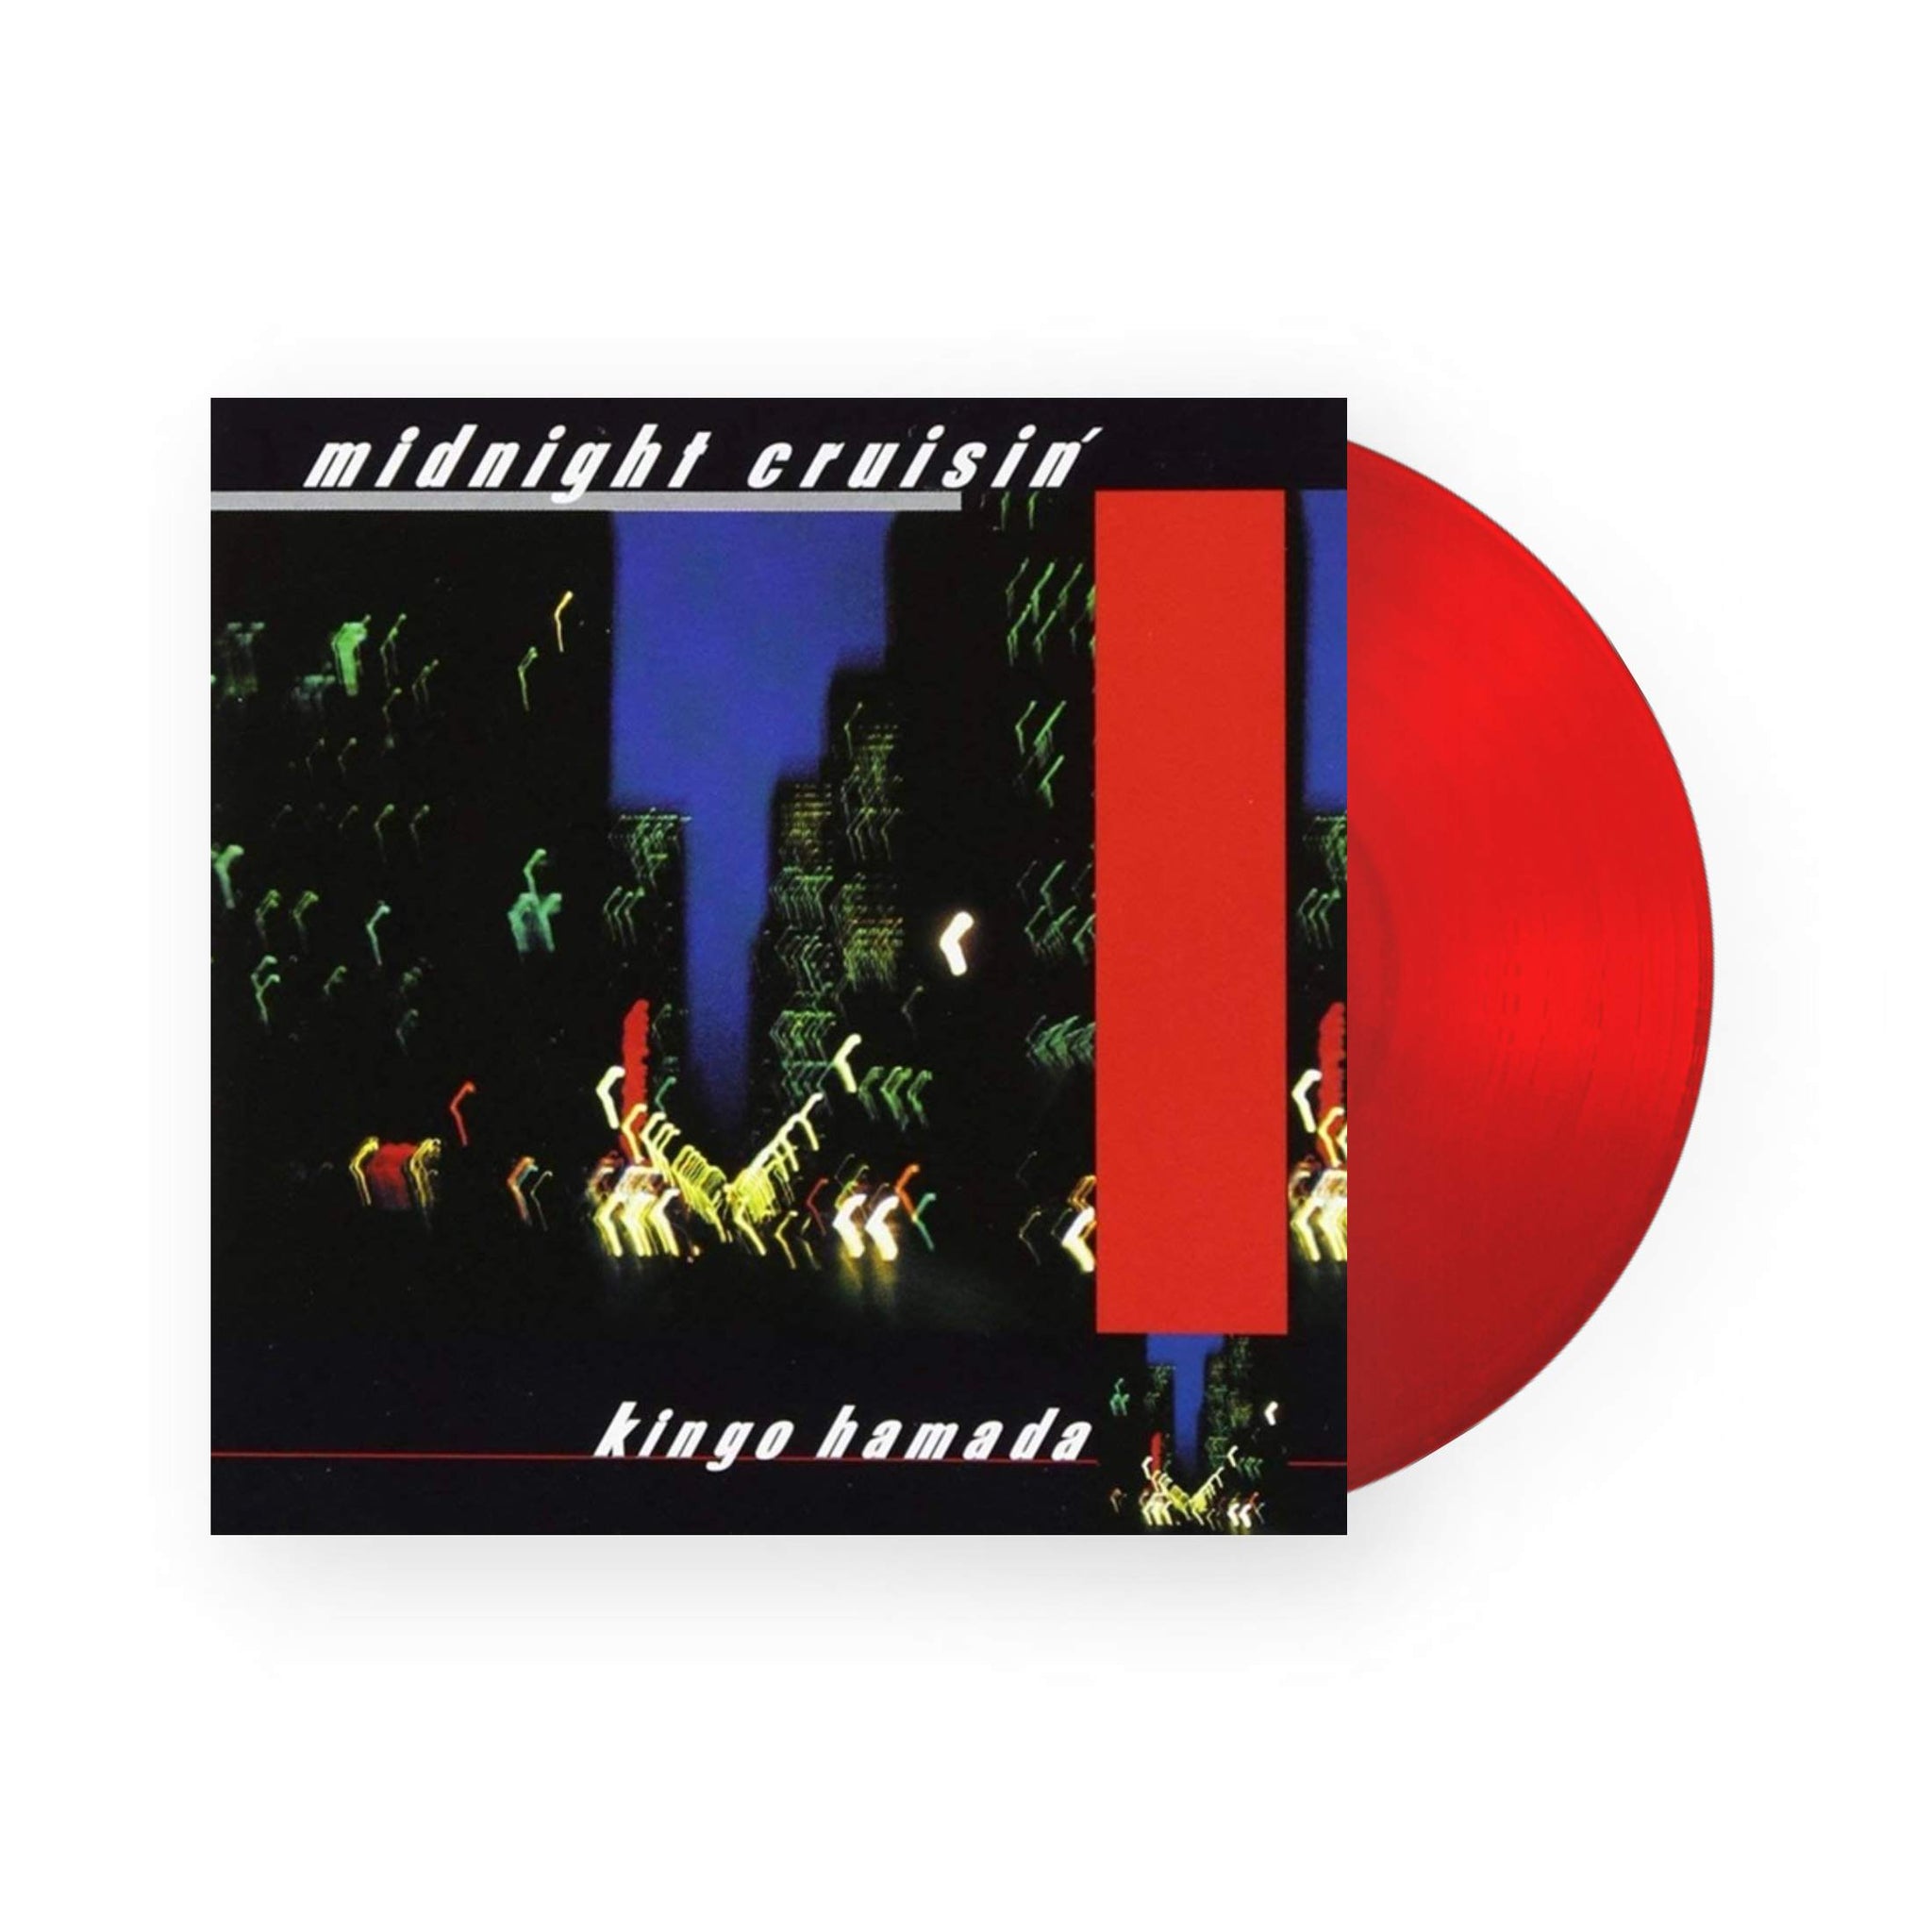 Kingo Hamada - Midnight Cruisin LP (Red Vinyl)